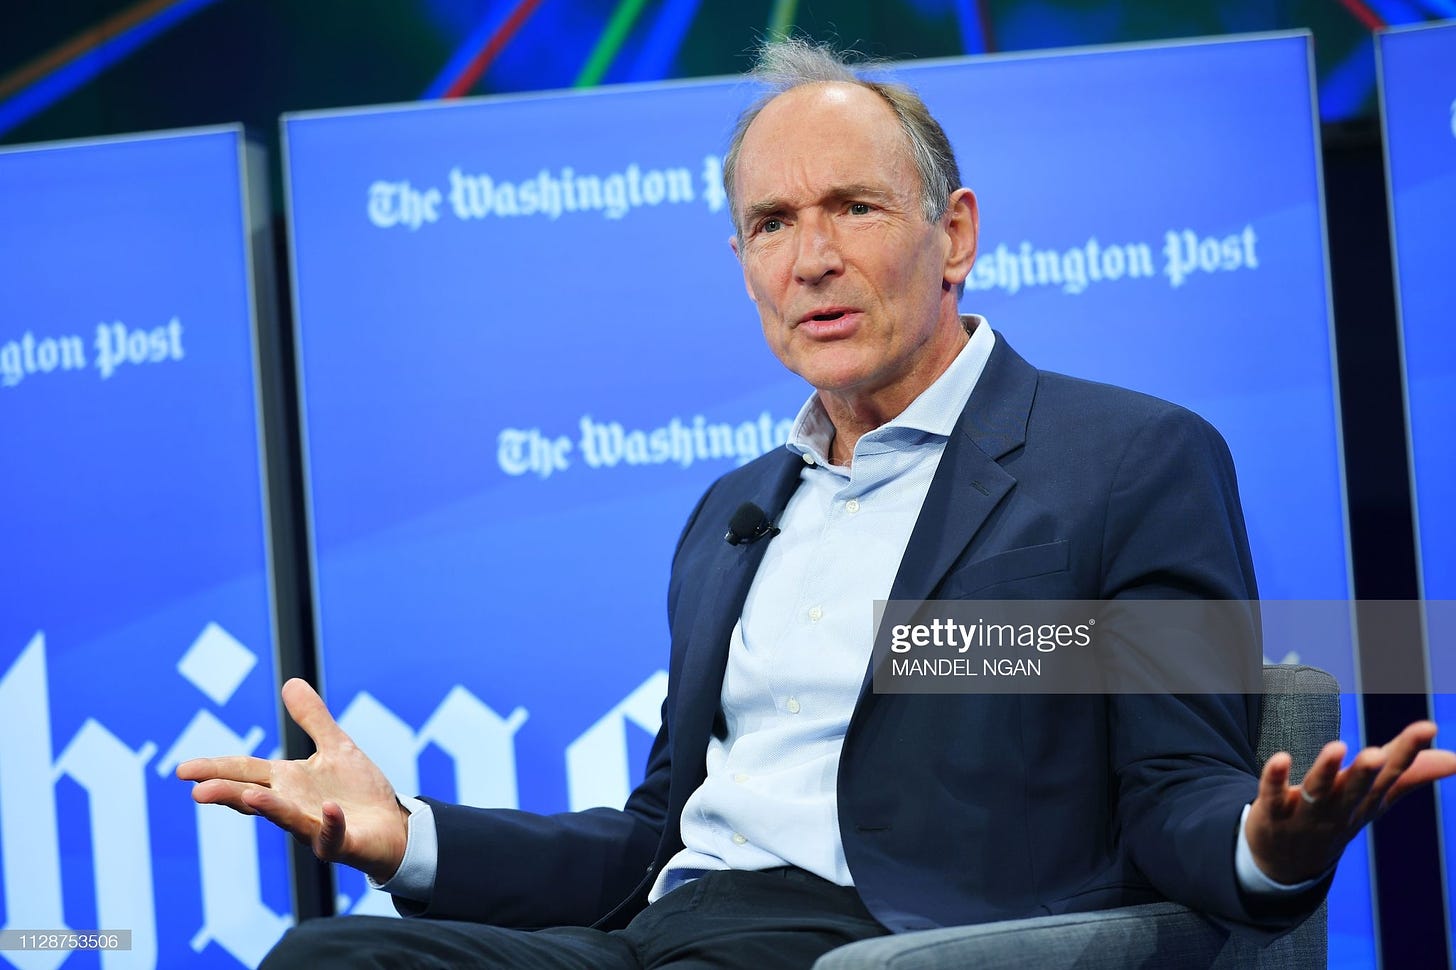 Tim Berners-Lee in 2019